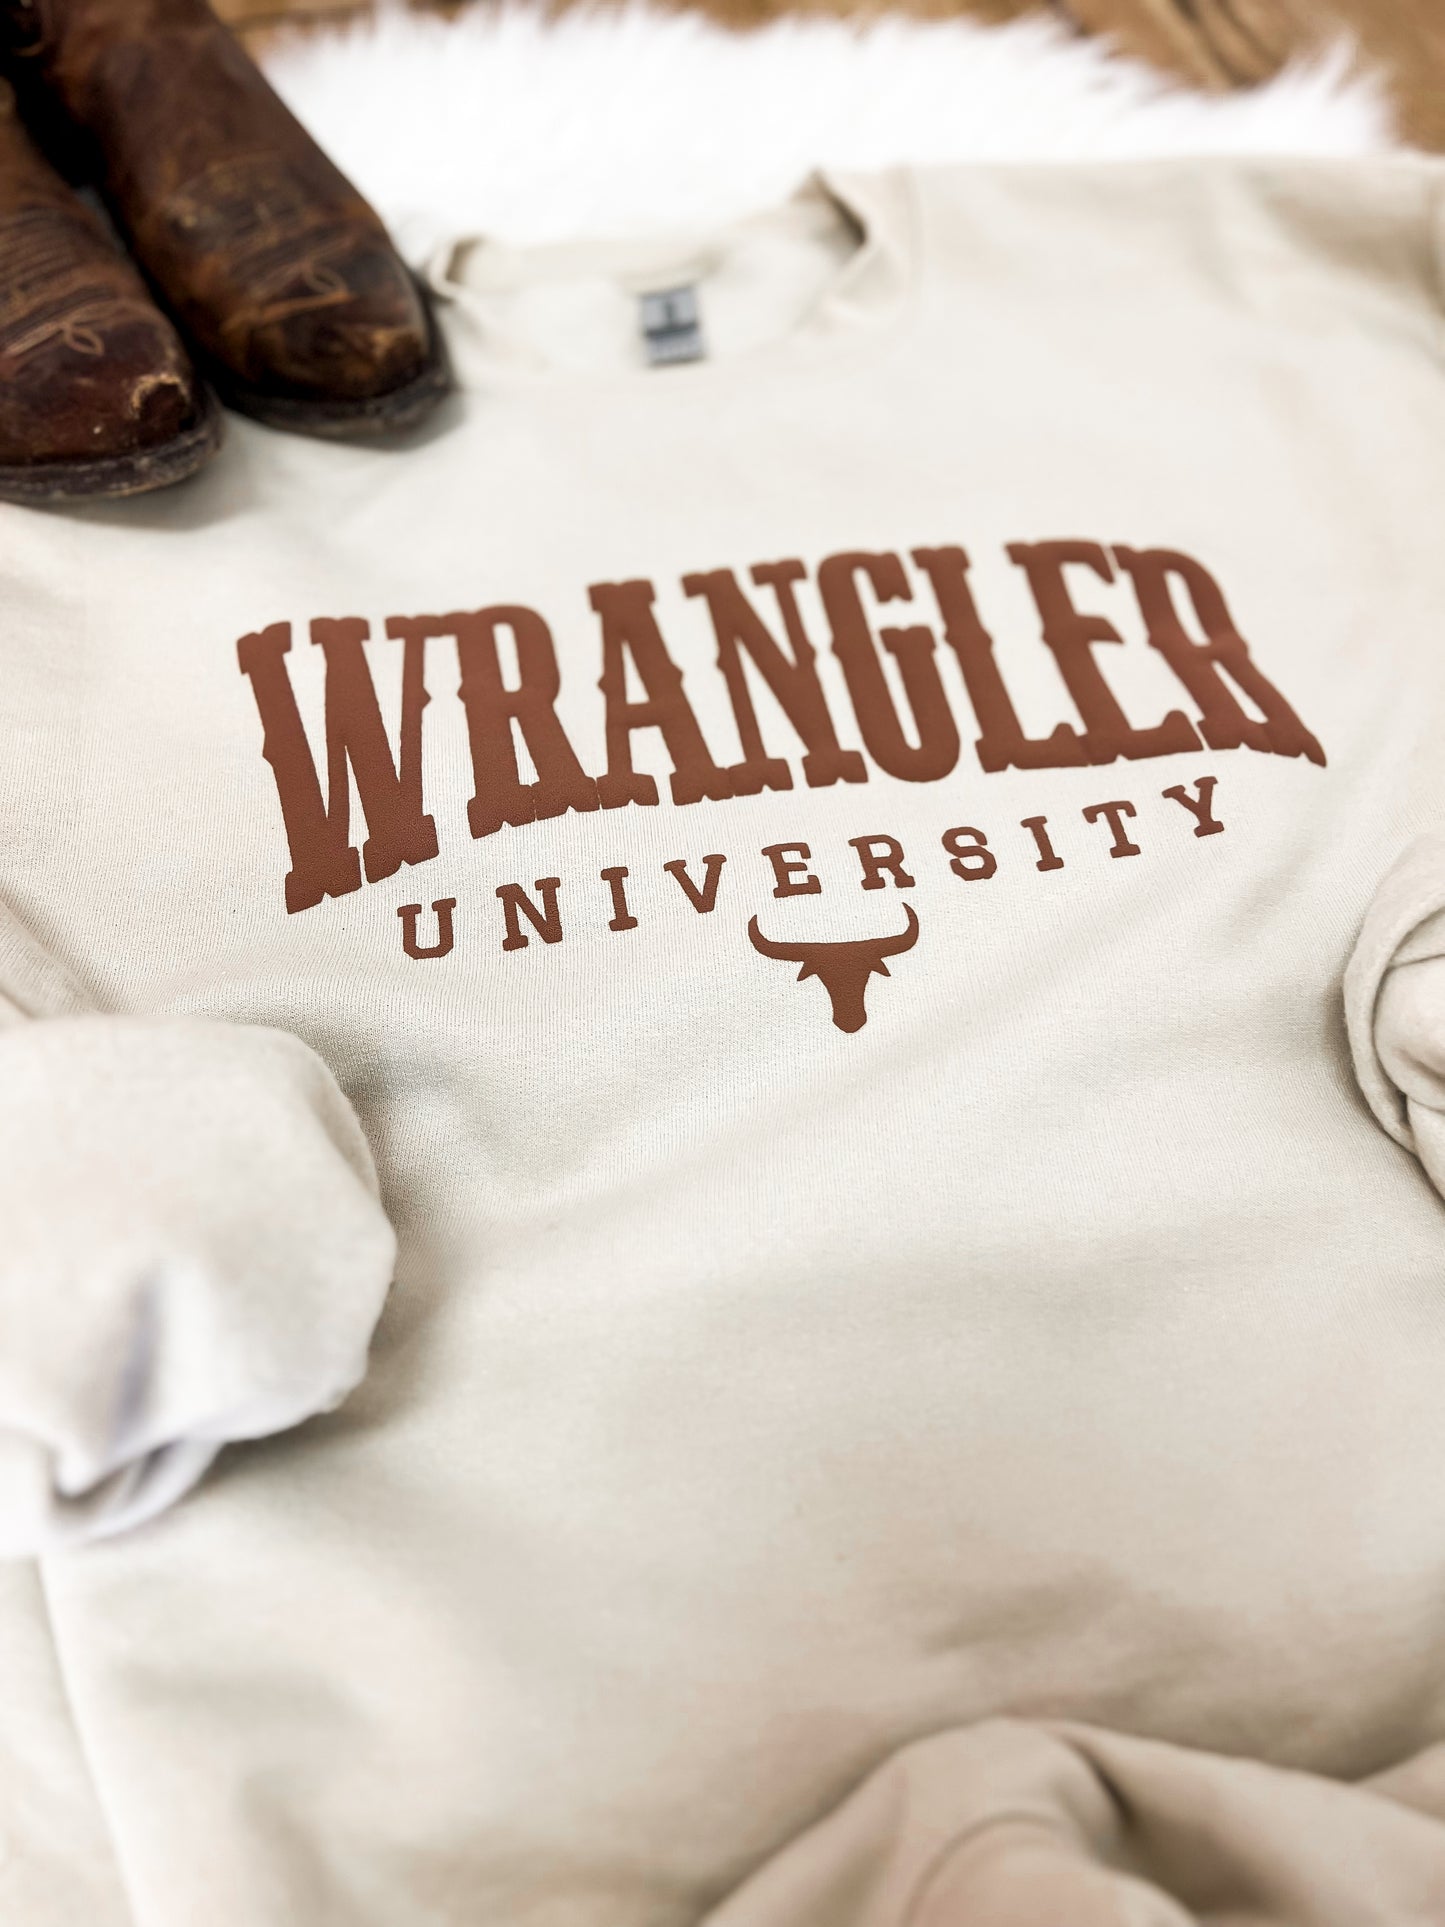 Wrangler University